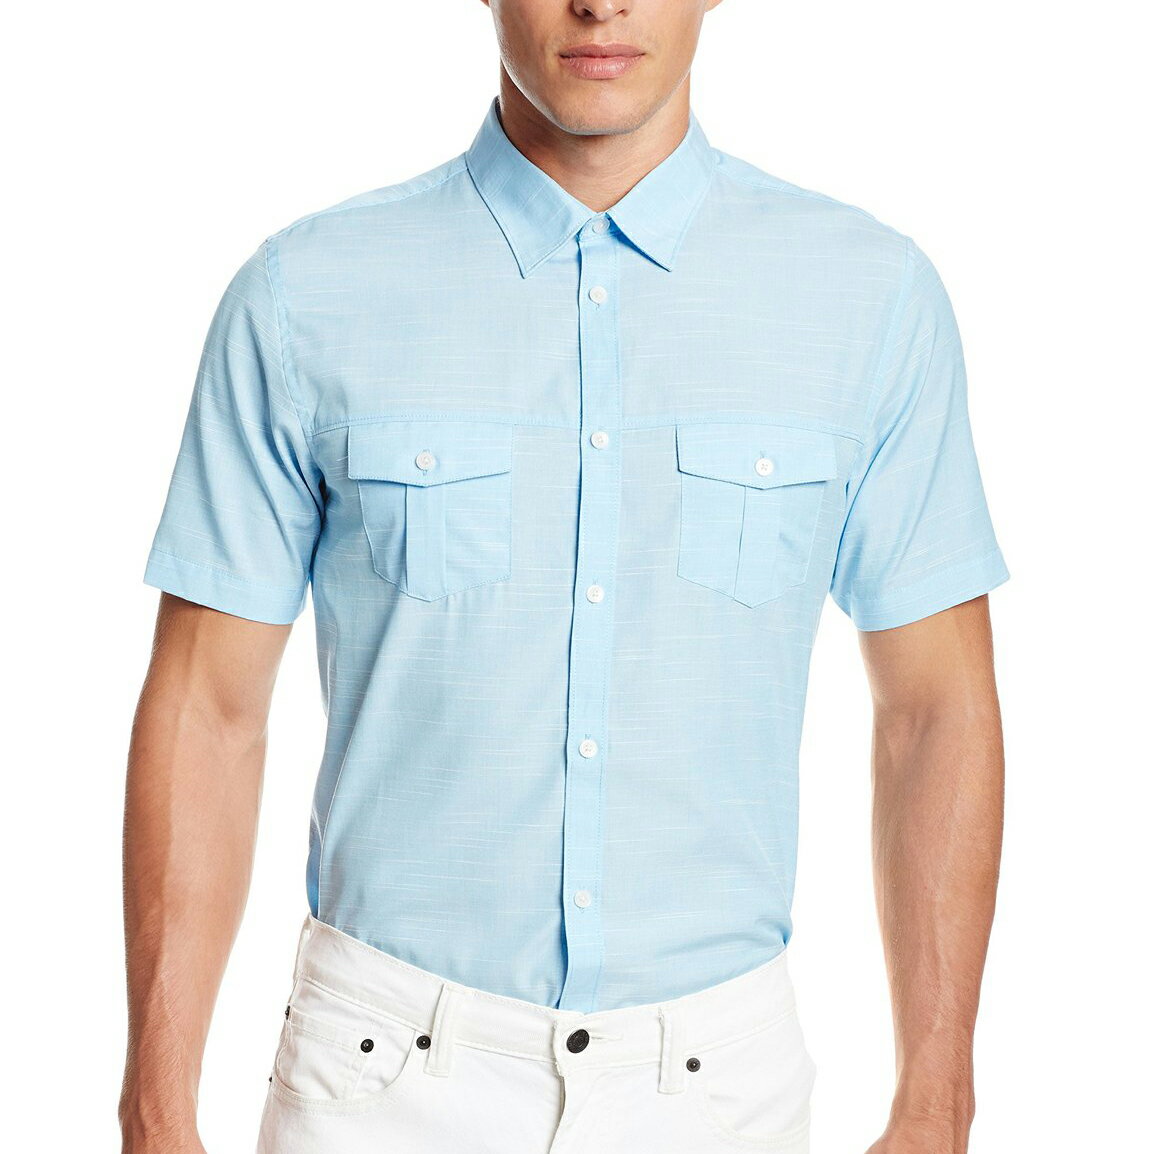 美國百分百【全新真品】Calvin Klein 襯衫 CK 男衣 短袖 口袋 素面 休閒 上班 S號 水藍色 E205